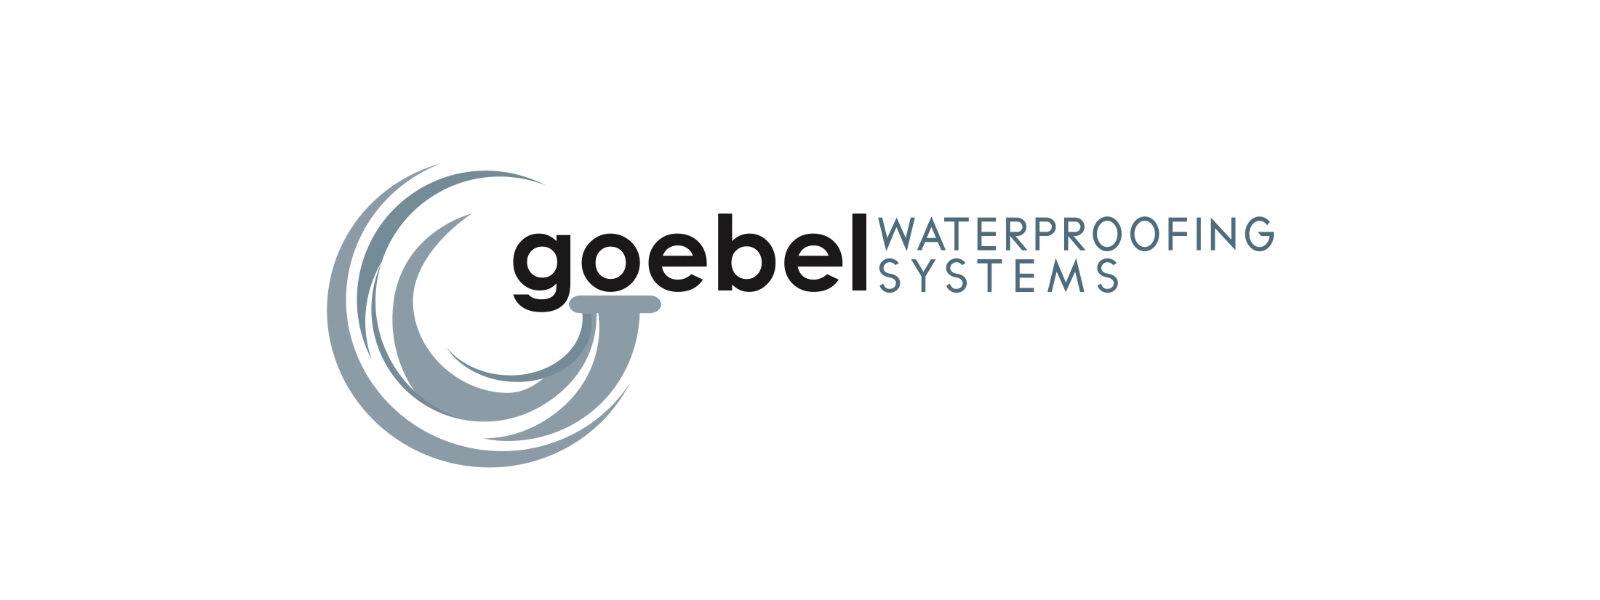 Goebel Waterproofing Systems Logo